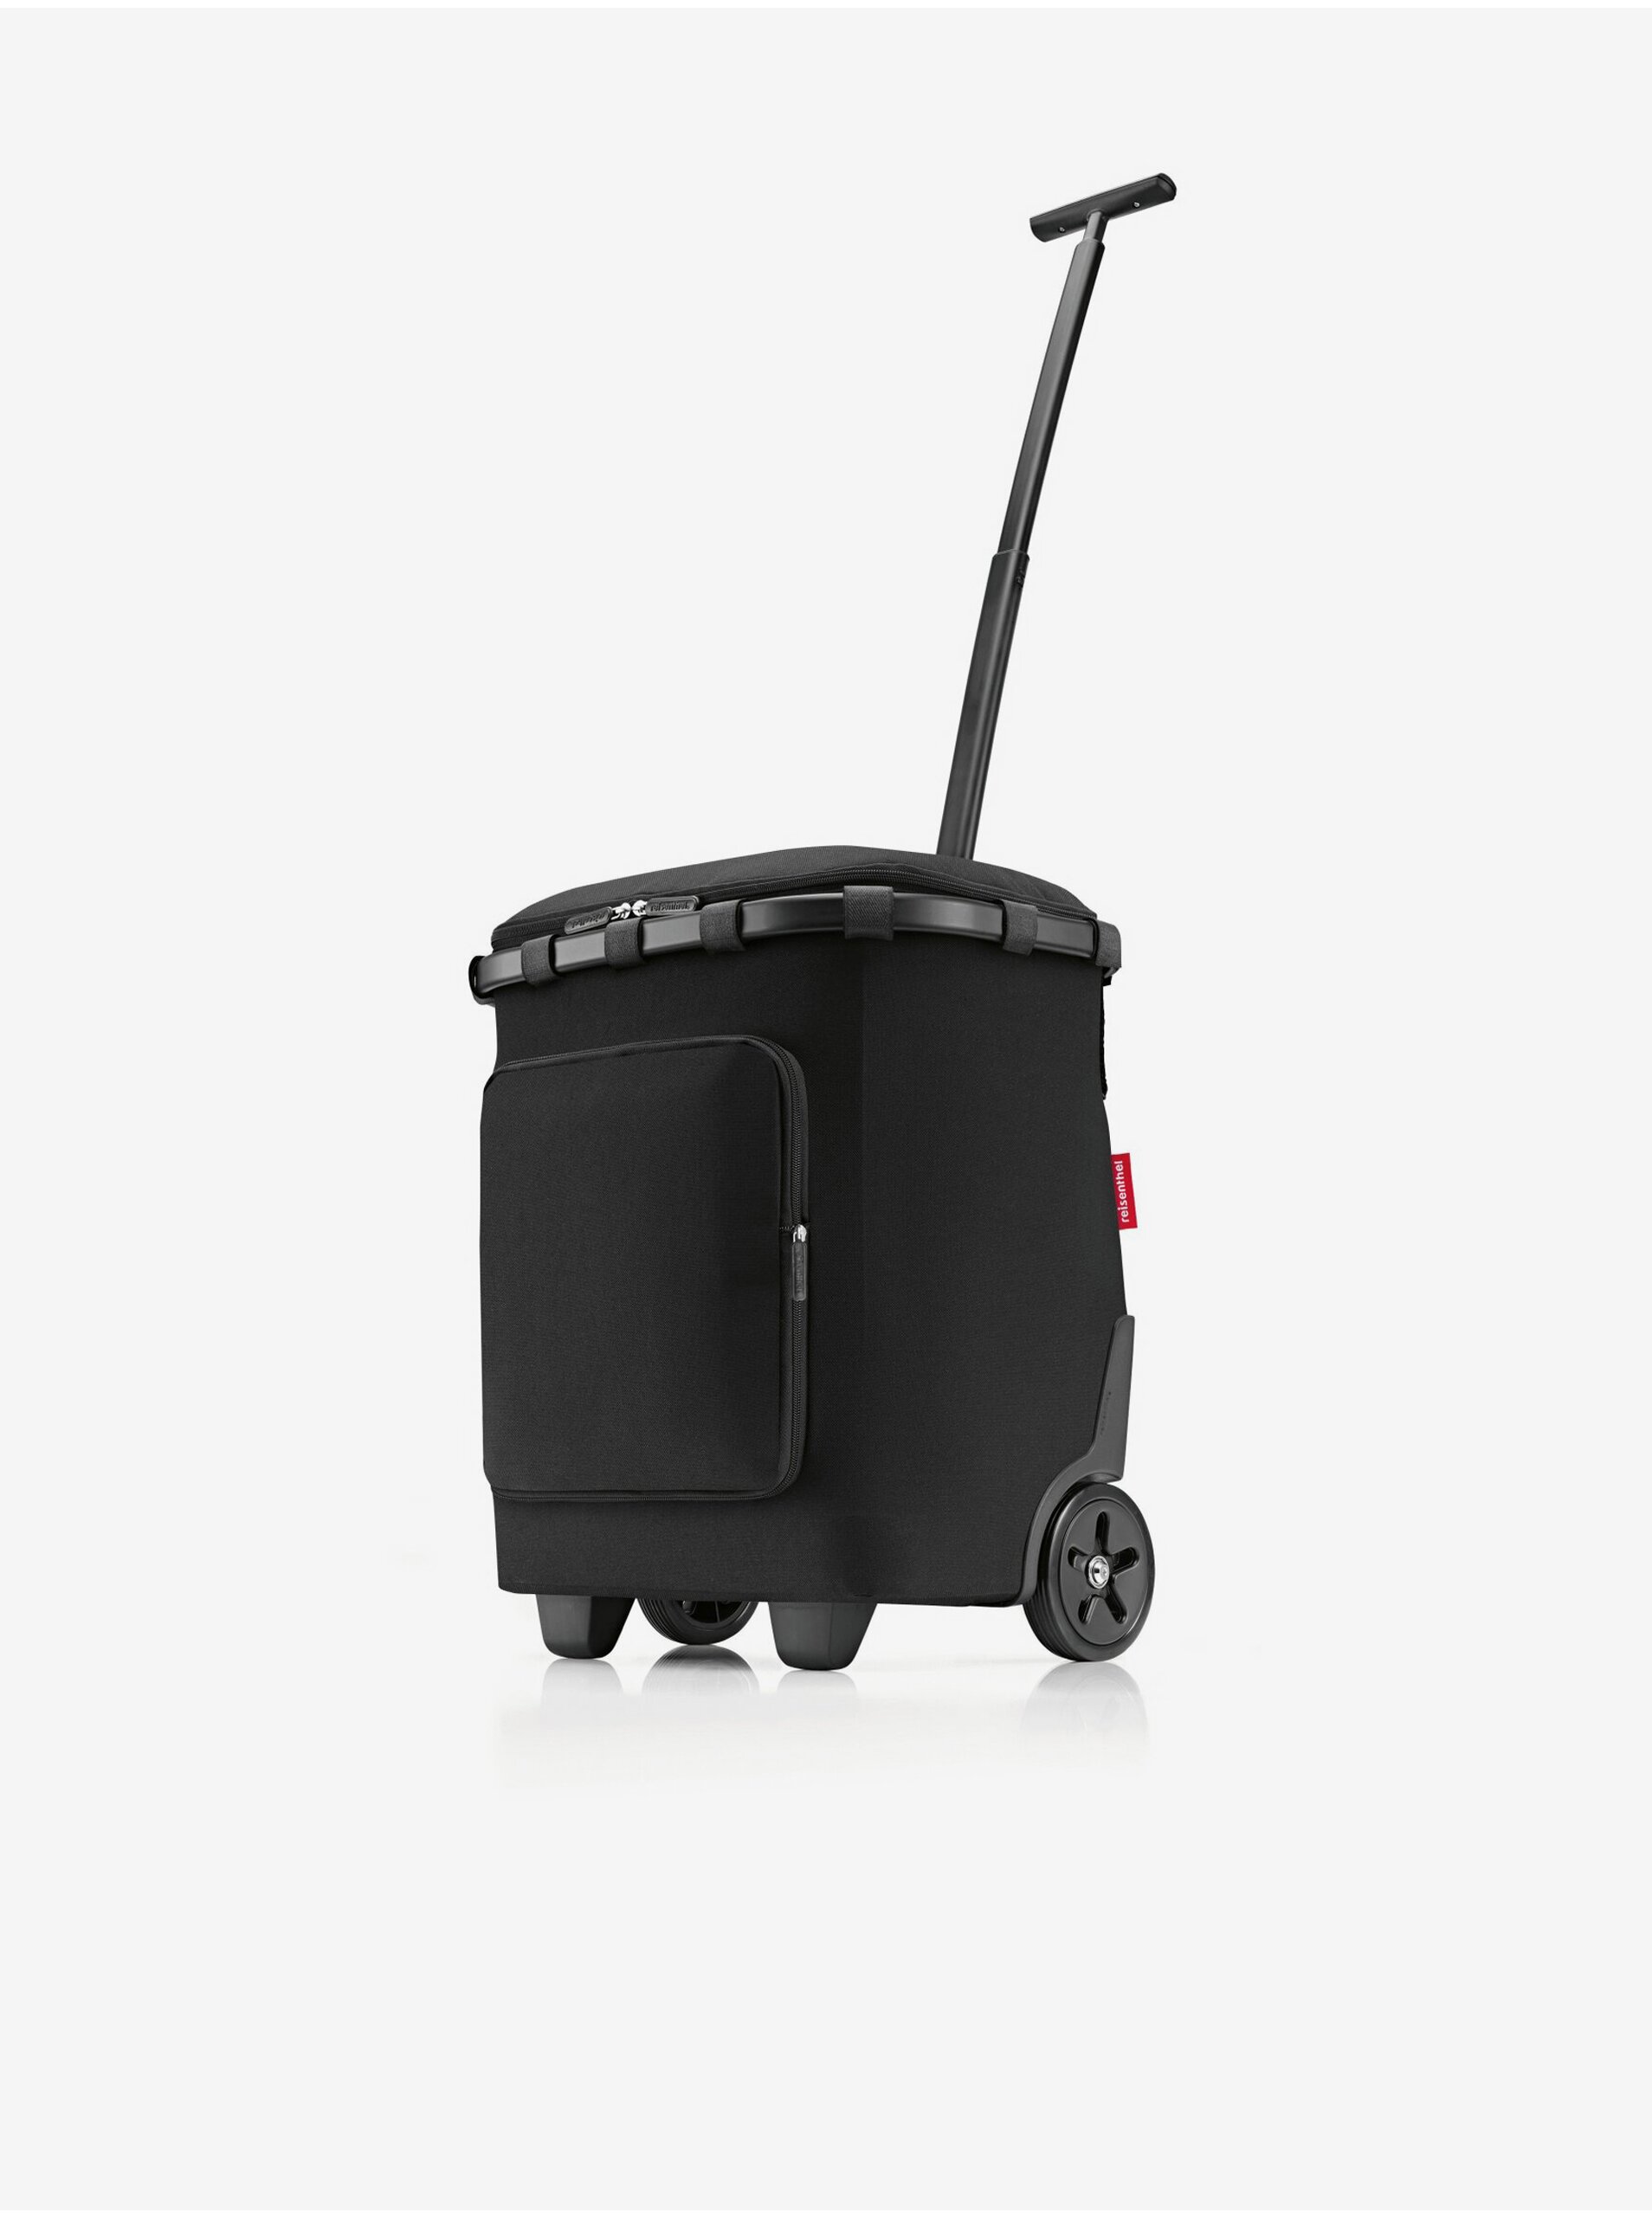 E-shop Černý nákupní vozík na kolečkách Reisenthel Carrycruiser Plus Frame